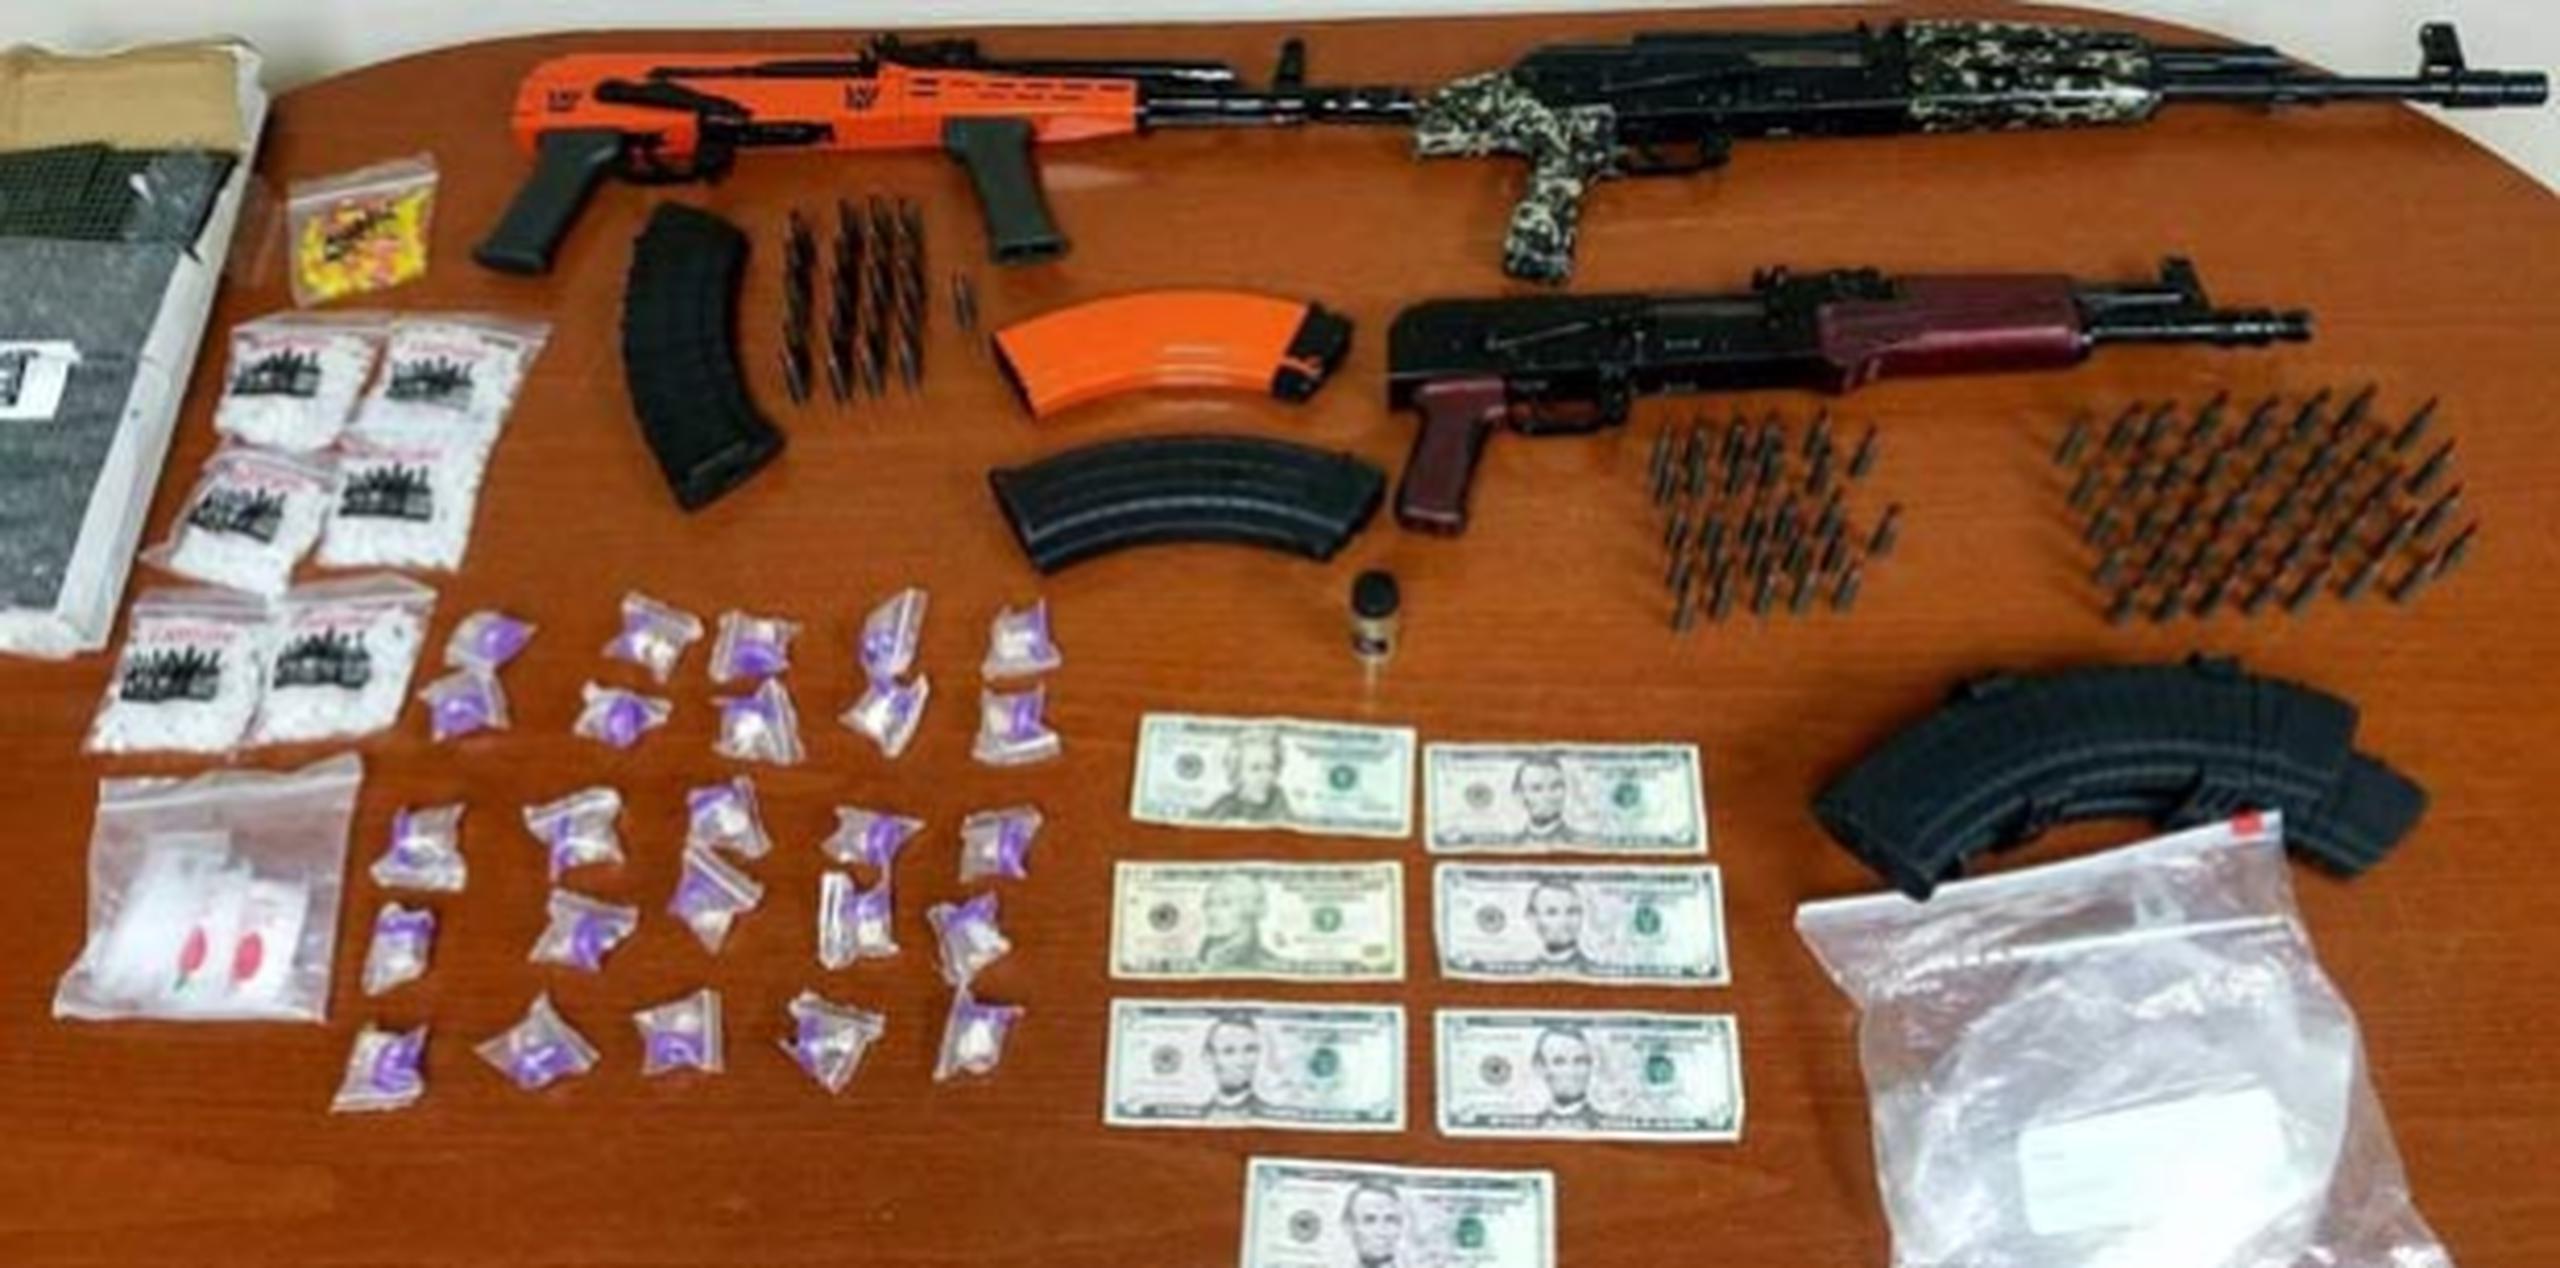 Durante la intervención se ocuparon tres rifles AK-47, cinco cargadores, 87 municiones para rifle, 25 copos con aparente cocaína en piedra y uno con marihuana. (Suministrada)